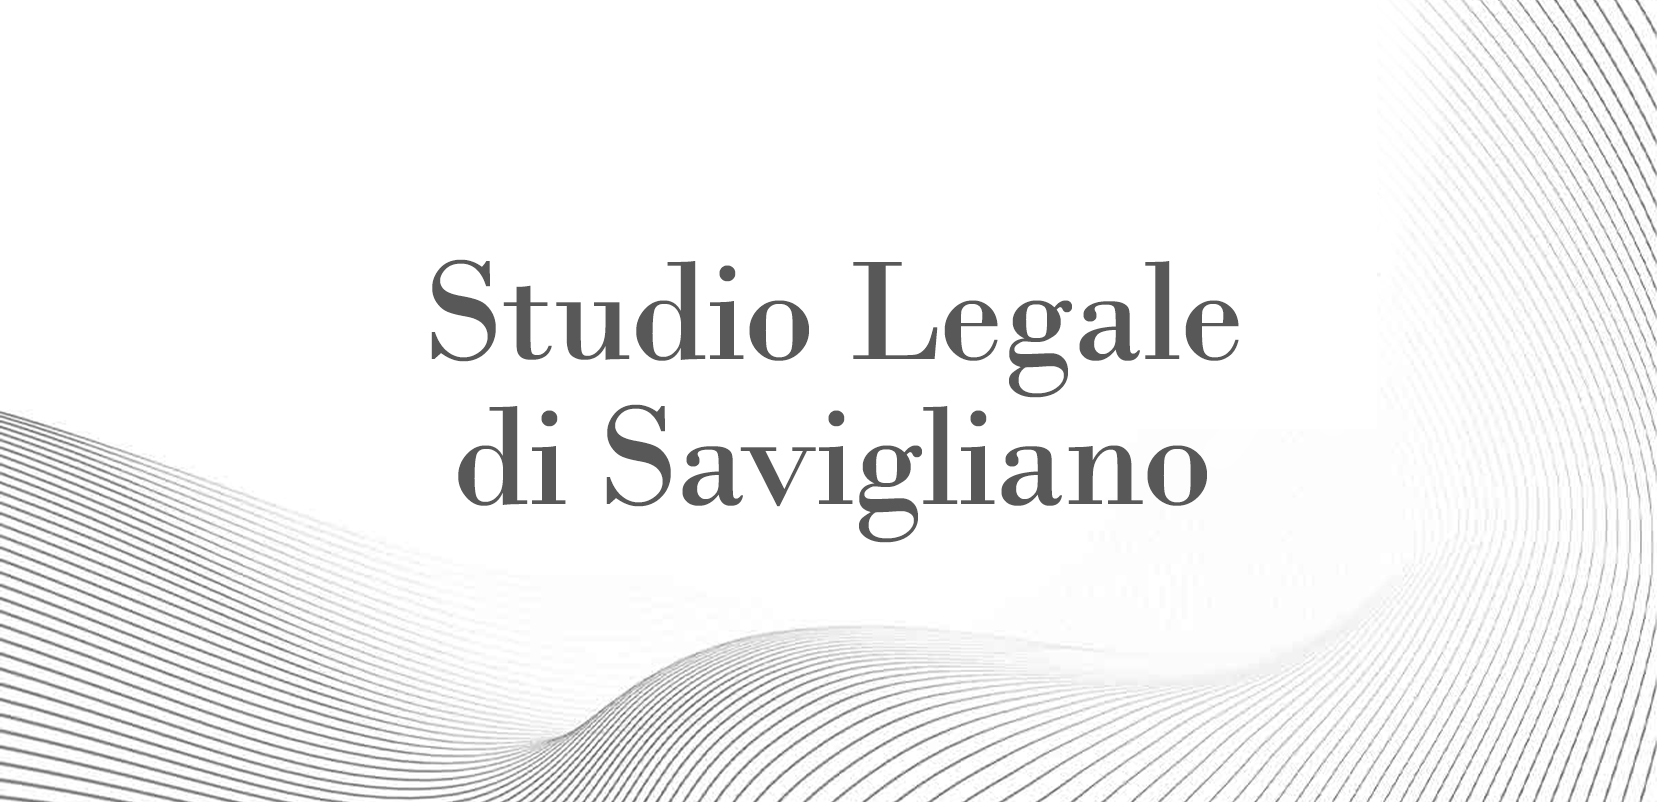 Studio Legale a Savigliano | Avvocati Desana Bertinetti